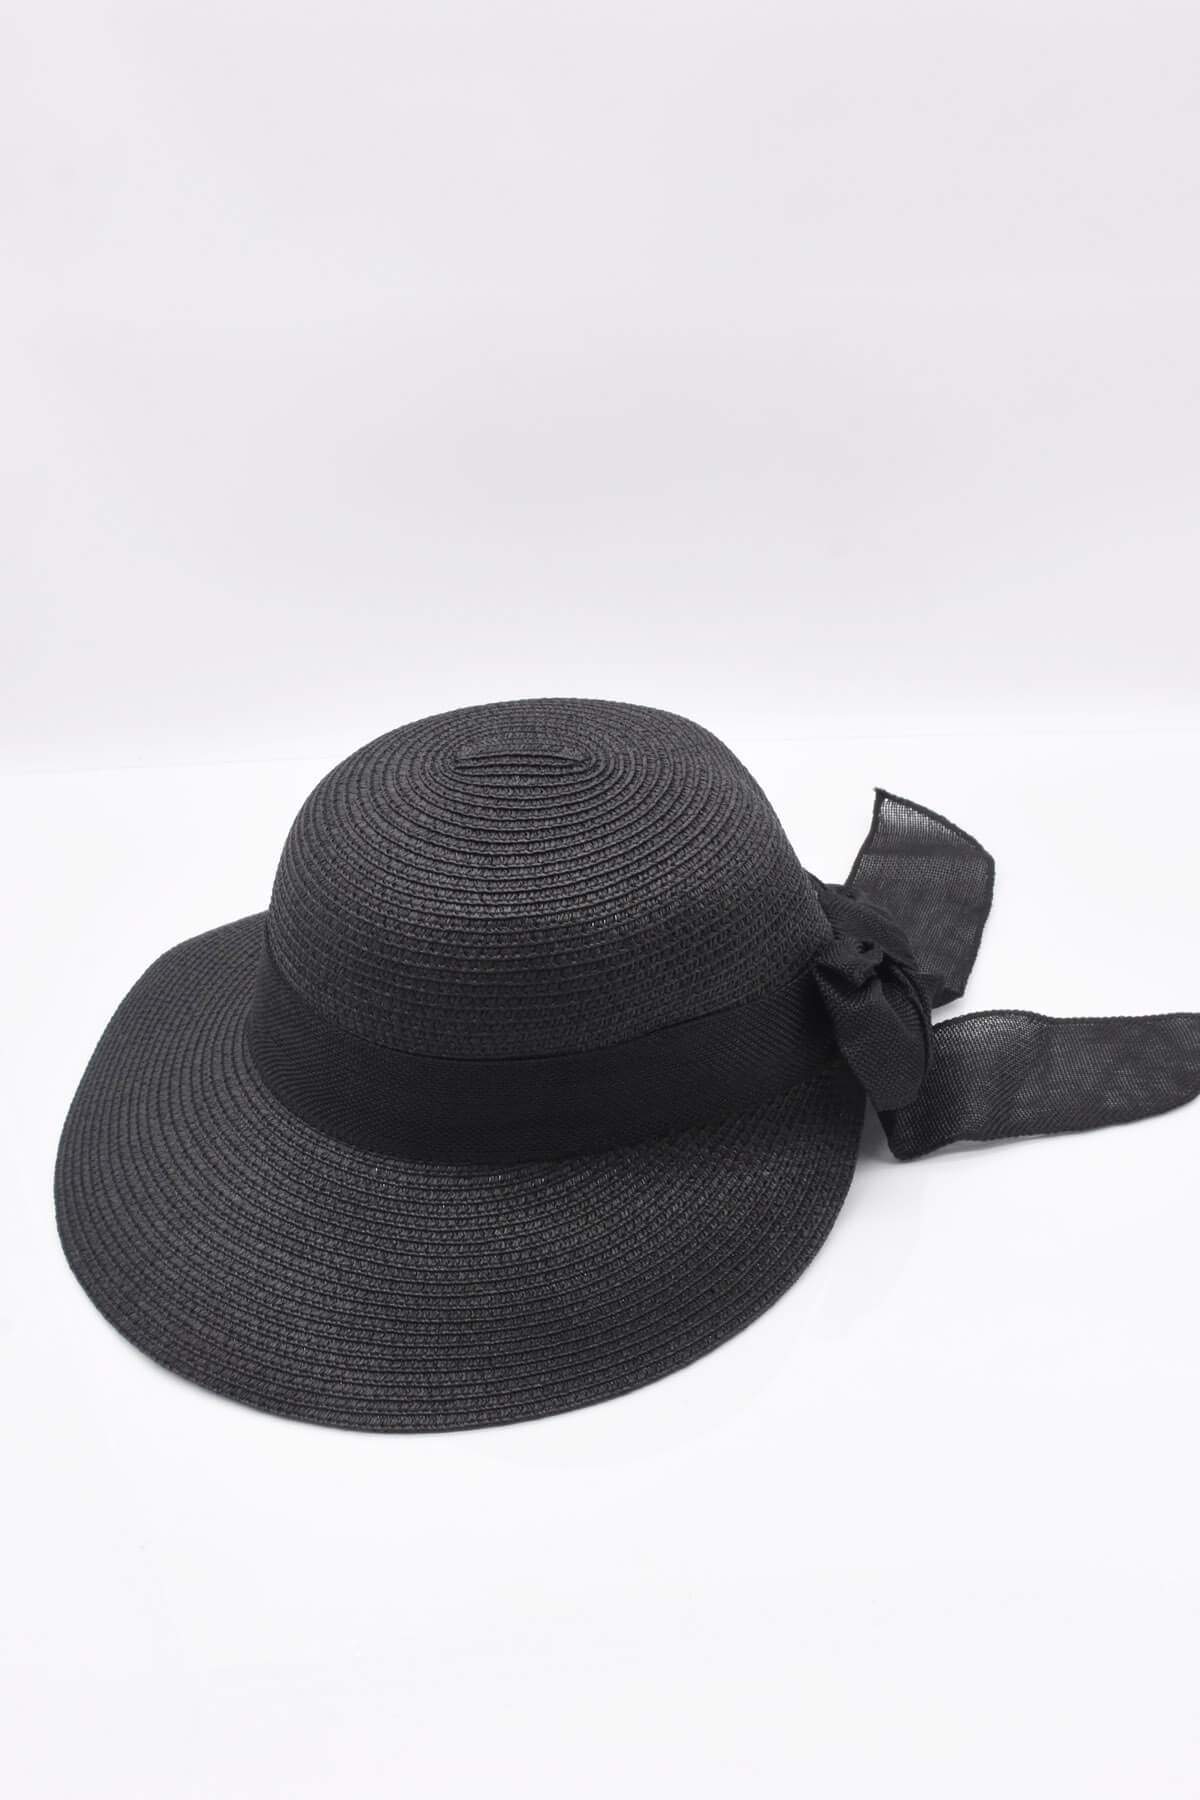 Külah Kadın Fiyonk Detaylı Siyah Hasır Şapka KLH0667